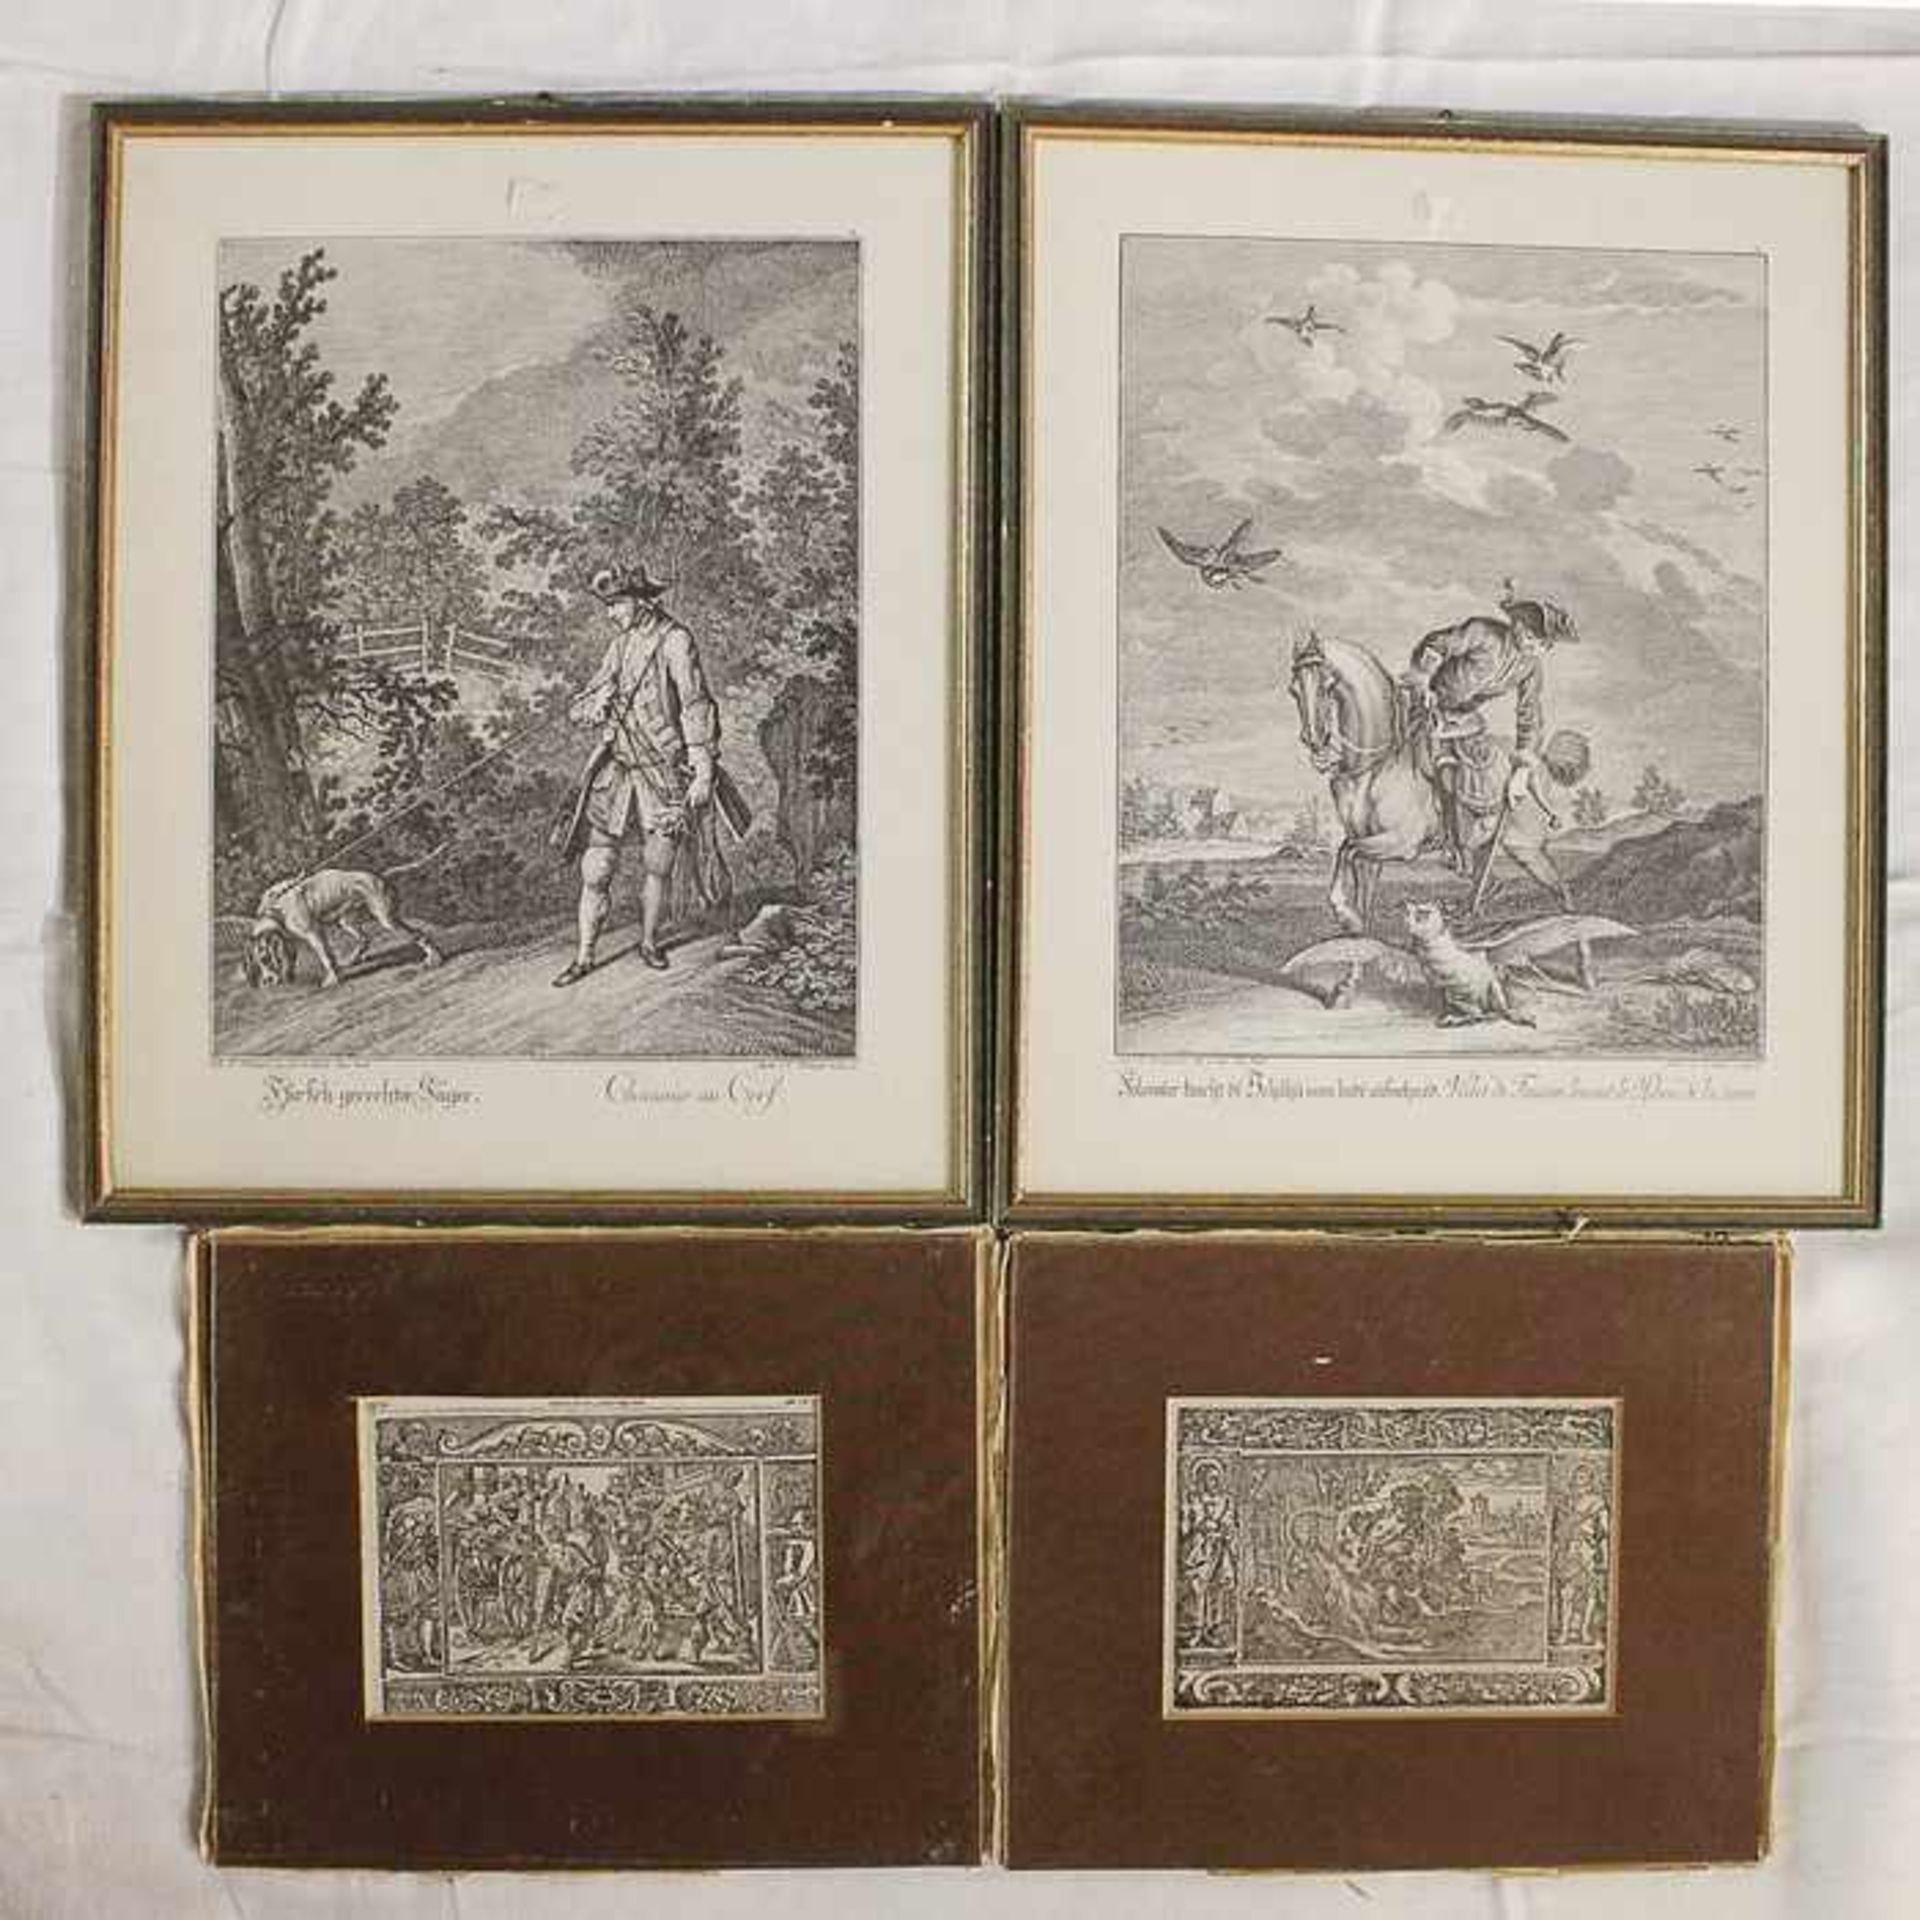 Endter, Andrea2 Holzstiche, je dat. 1735, "Biblische Szenen", Buchausschnitte m. Text, Blätter